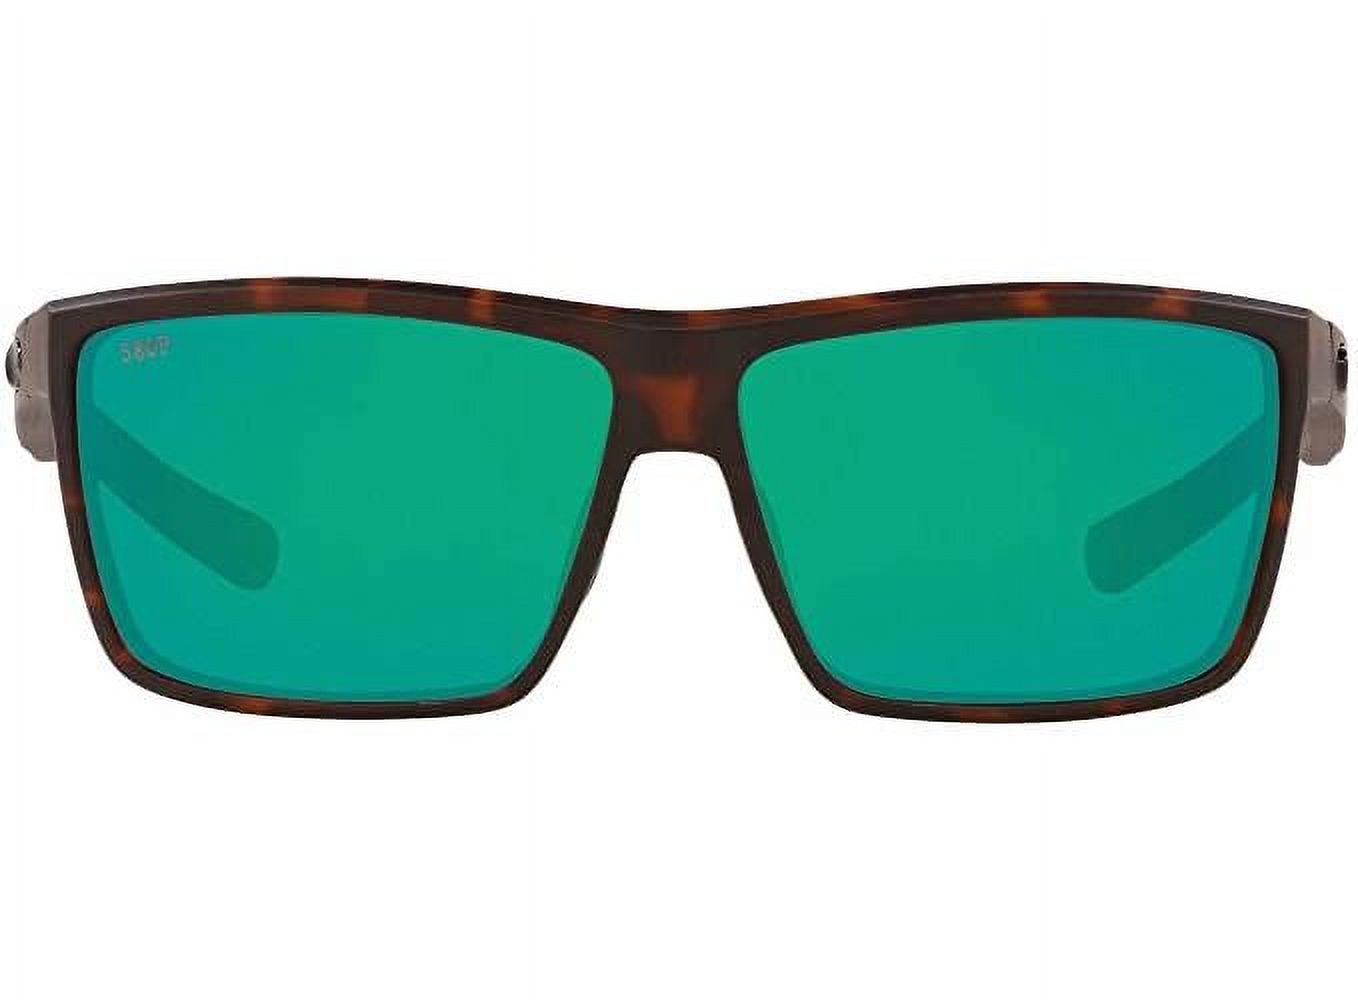 Costa Del Mar Rinconcito Sunglasses, Matte Tortoise, Green Mirror, 580P - image 1 of 4